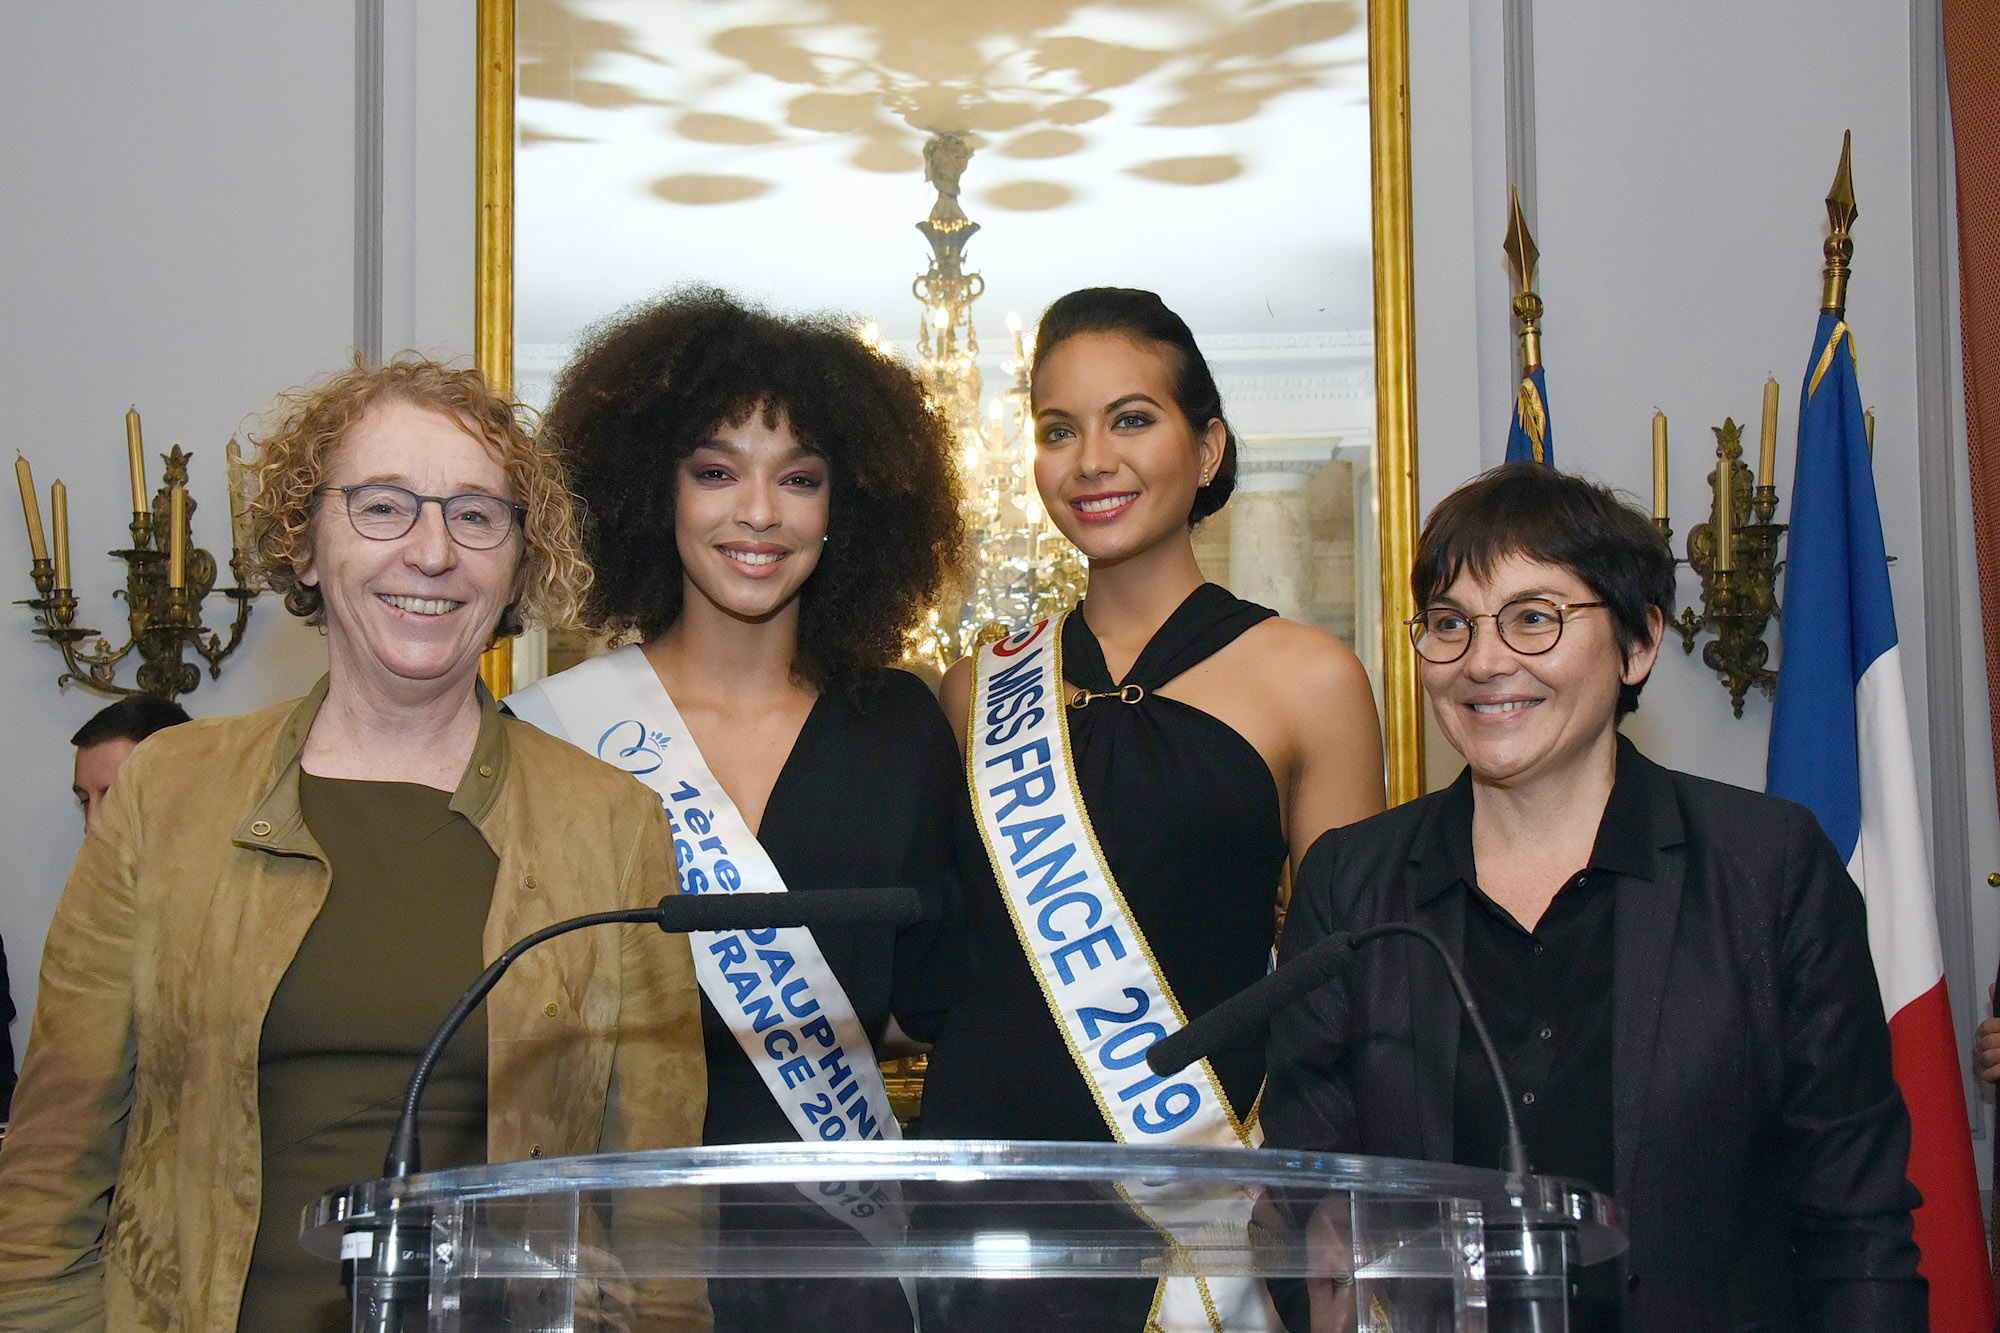 Muriel Pénicaud, Ministre du Travail, Ophély Mézino, 1ère dauphine Miss France 2019, Vaimalama Chaves, Miss France 2019, et Annick Girardin, Ministre des Outre-Mer